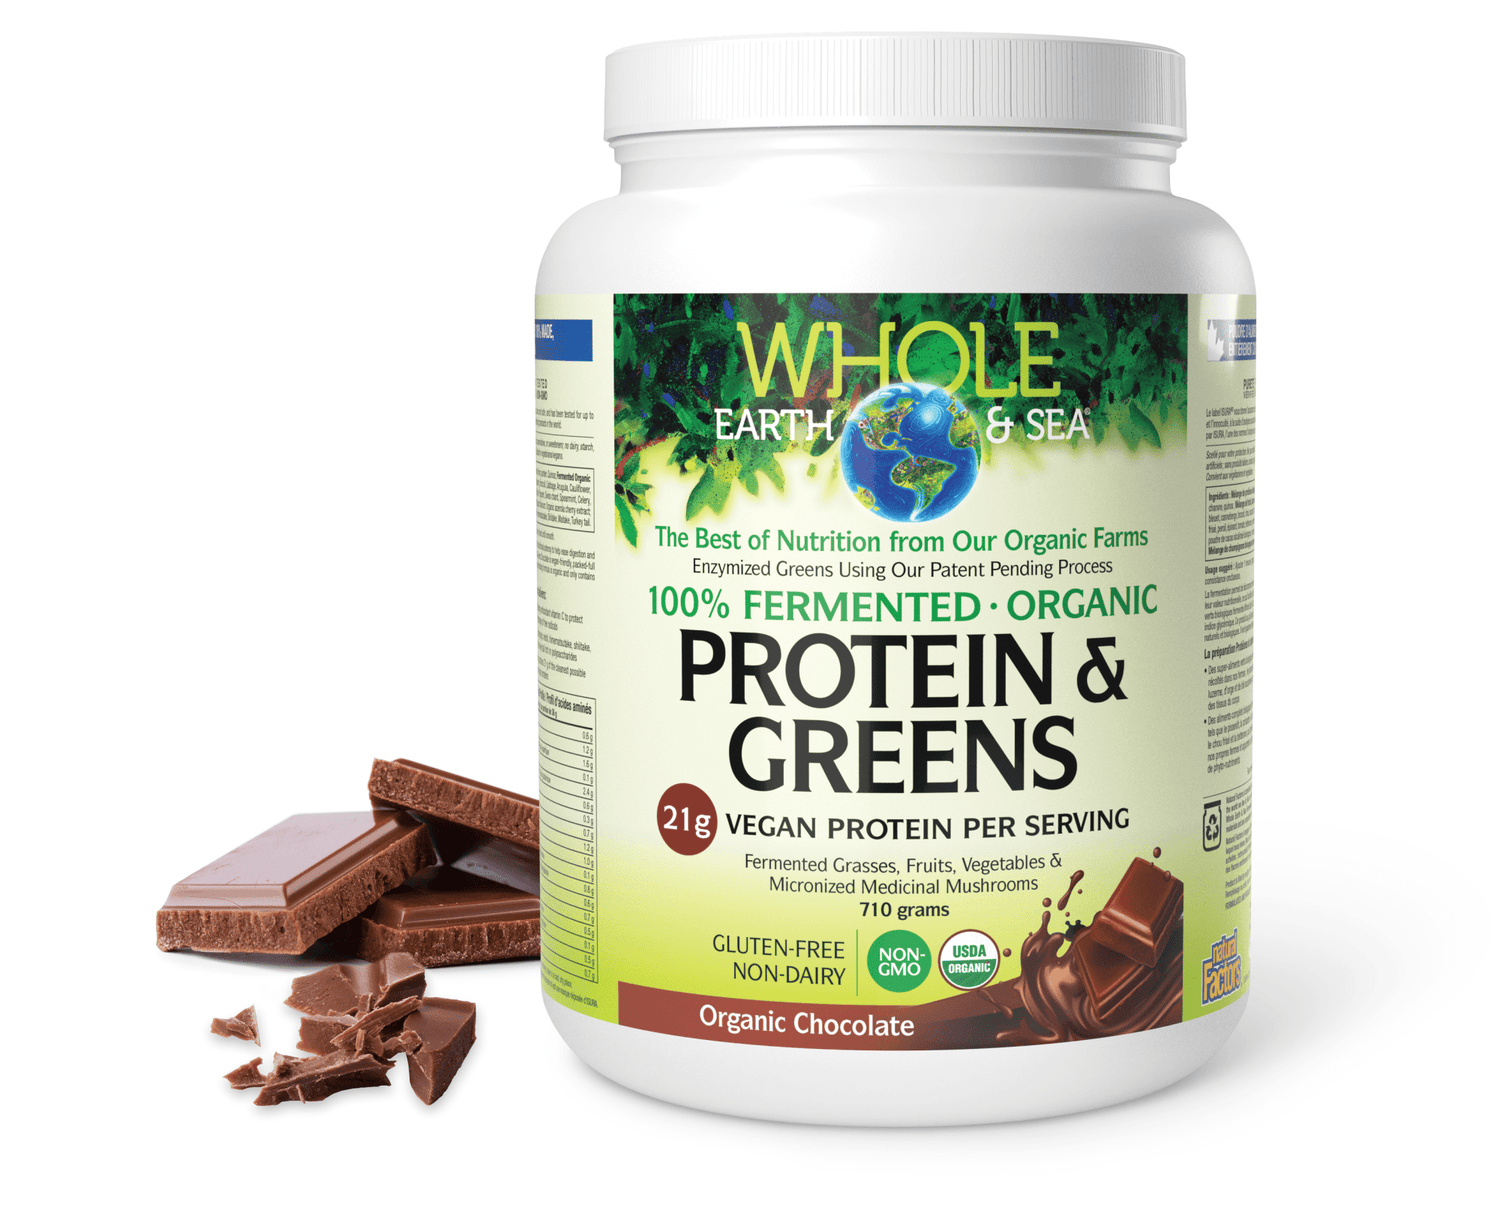 Fermented Organic Protein & Greens, Organic Chocolate, Whole Earth & Sea, Whole Earth & Sea®|v|image|35535